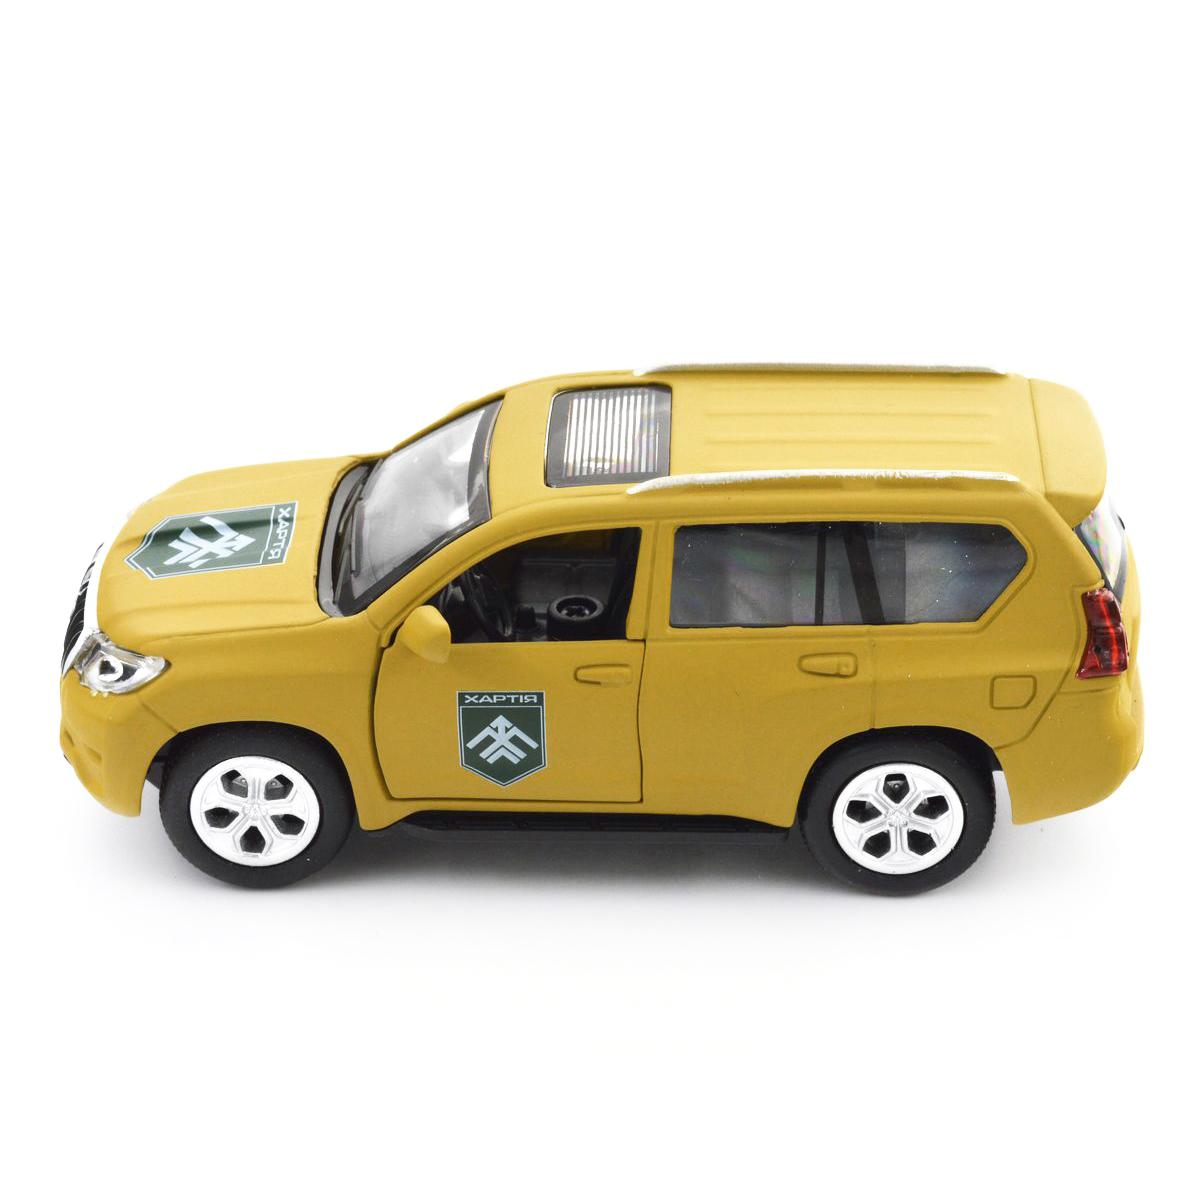 Іграшка автомодель - Шеврони Героїв - Toyota Prado - Хартія, KM6188